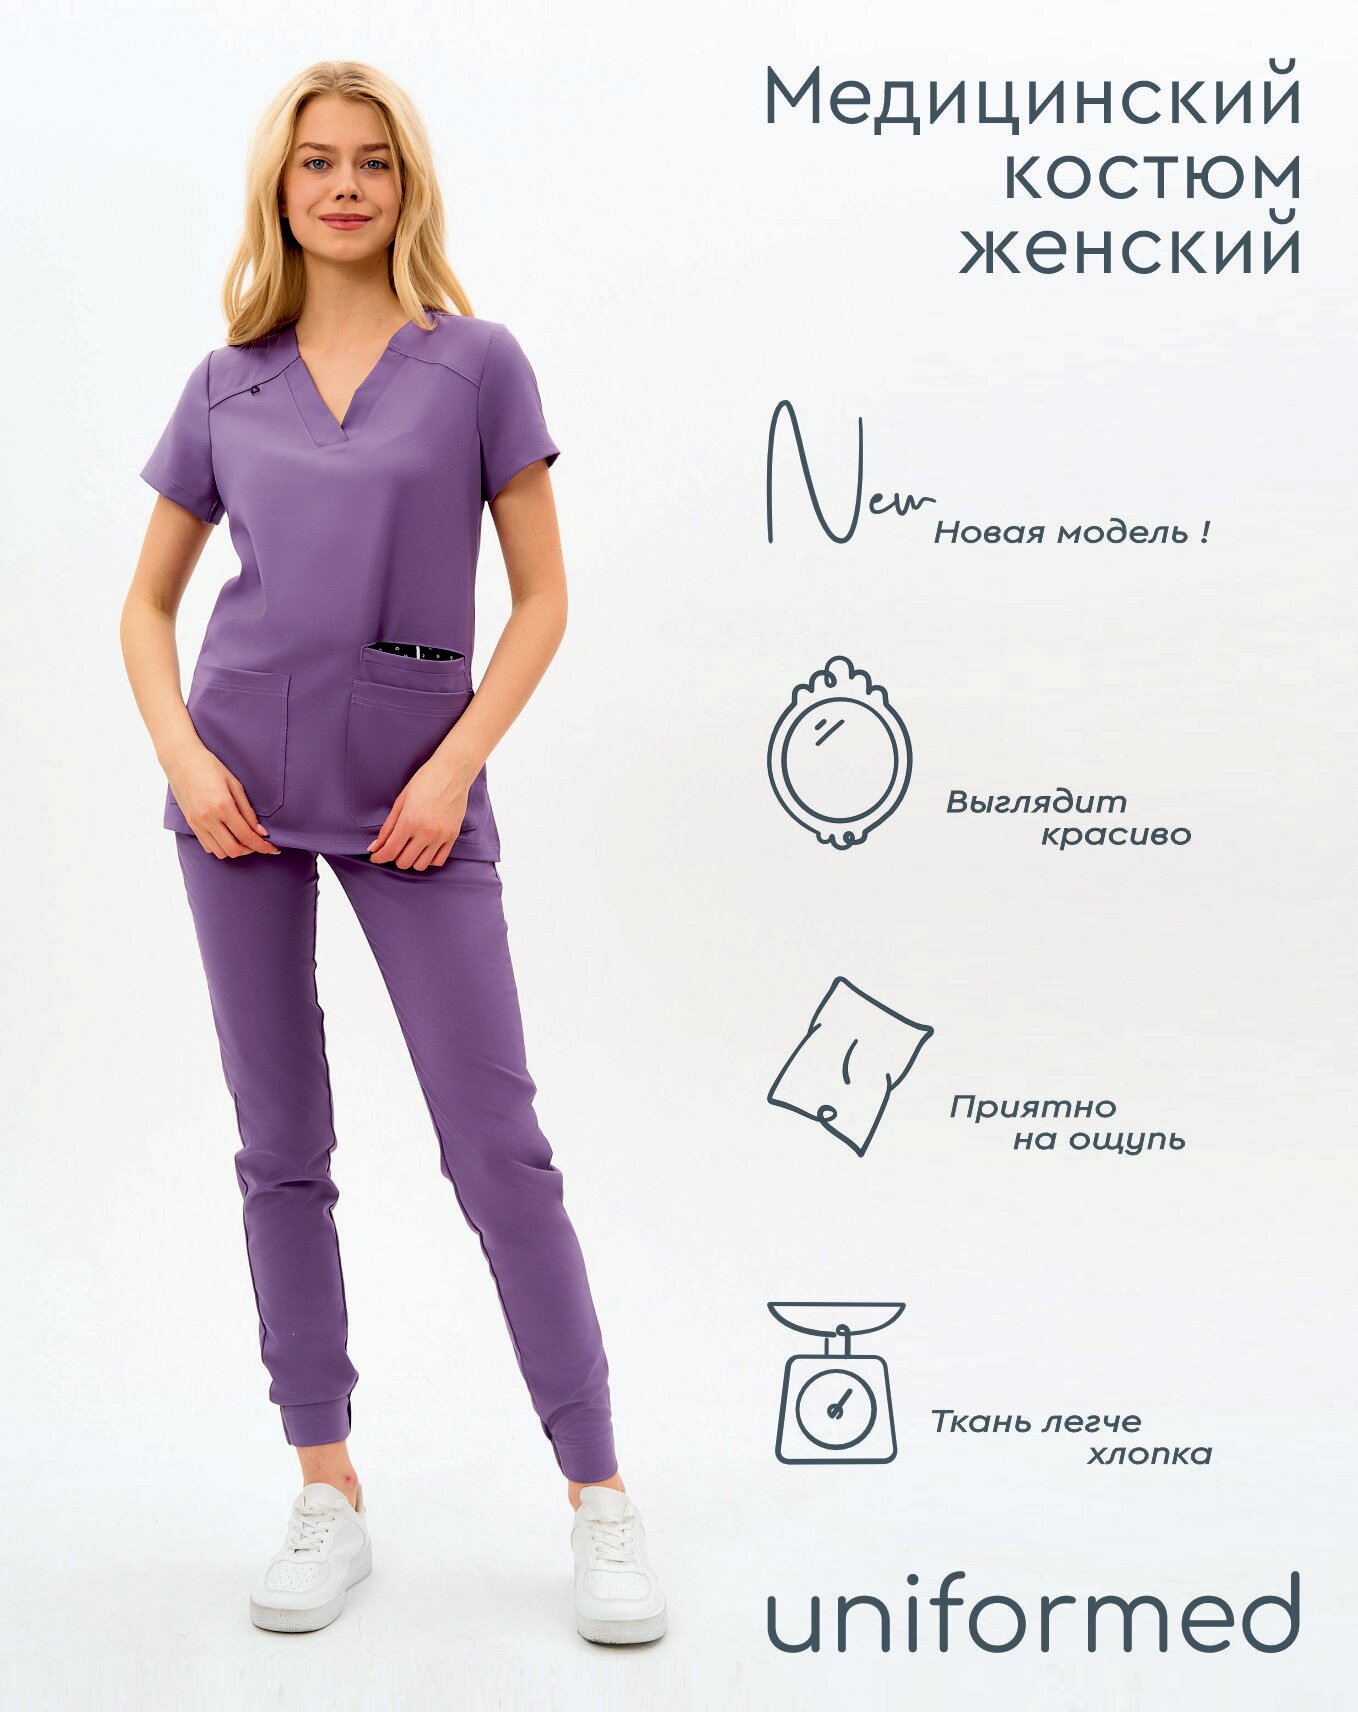 Медицинский женский костюм 419.5.3 Uniformed, ткань вискоза стрейч, рукав короткий, цвет сиреневый, отделка черная, размер 48